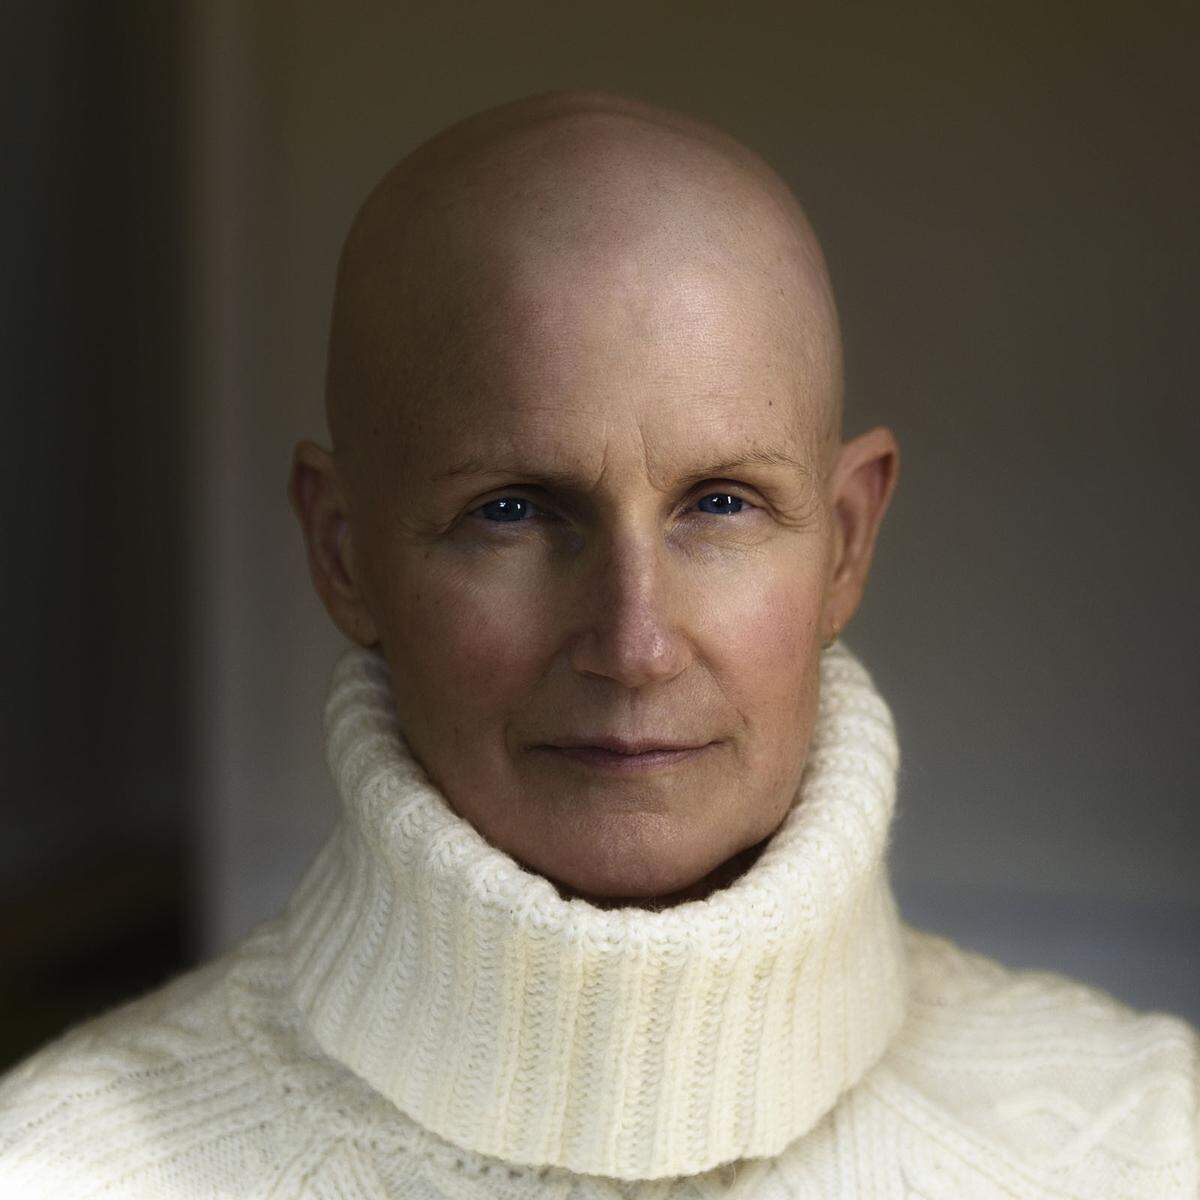 Susan: "Ich habe gerade die Chemotherapie beendet und werde sehen, was passiert. Ich wollte nie eine Perücke tragen, weil das nicht ich bin. Ich möchte mich vor niemandem mehr verstecken."